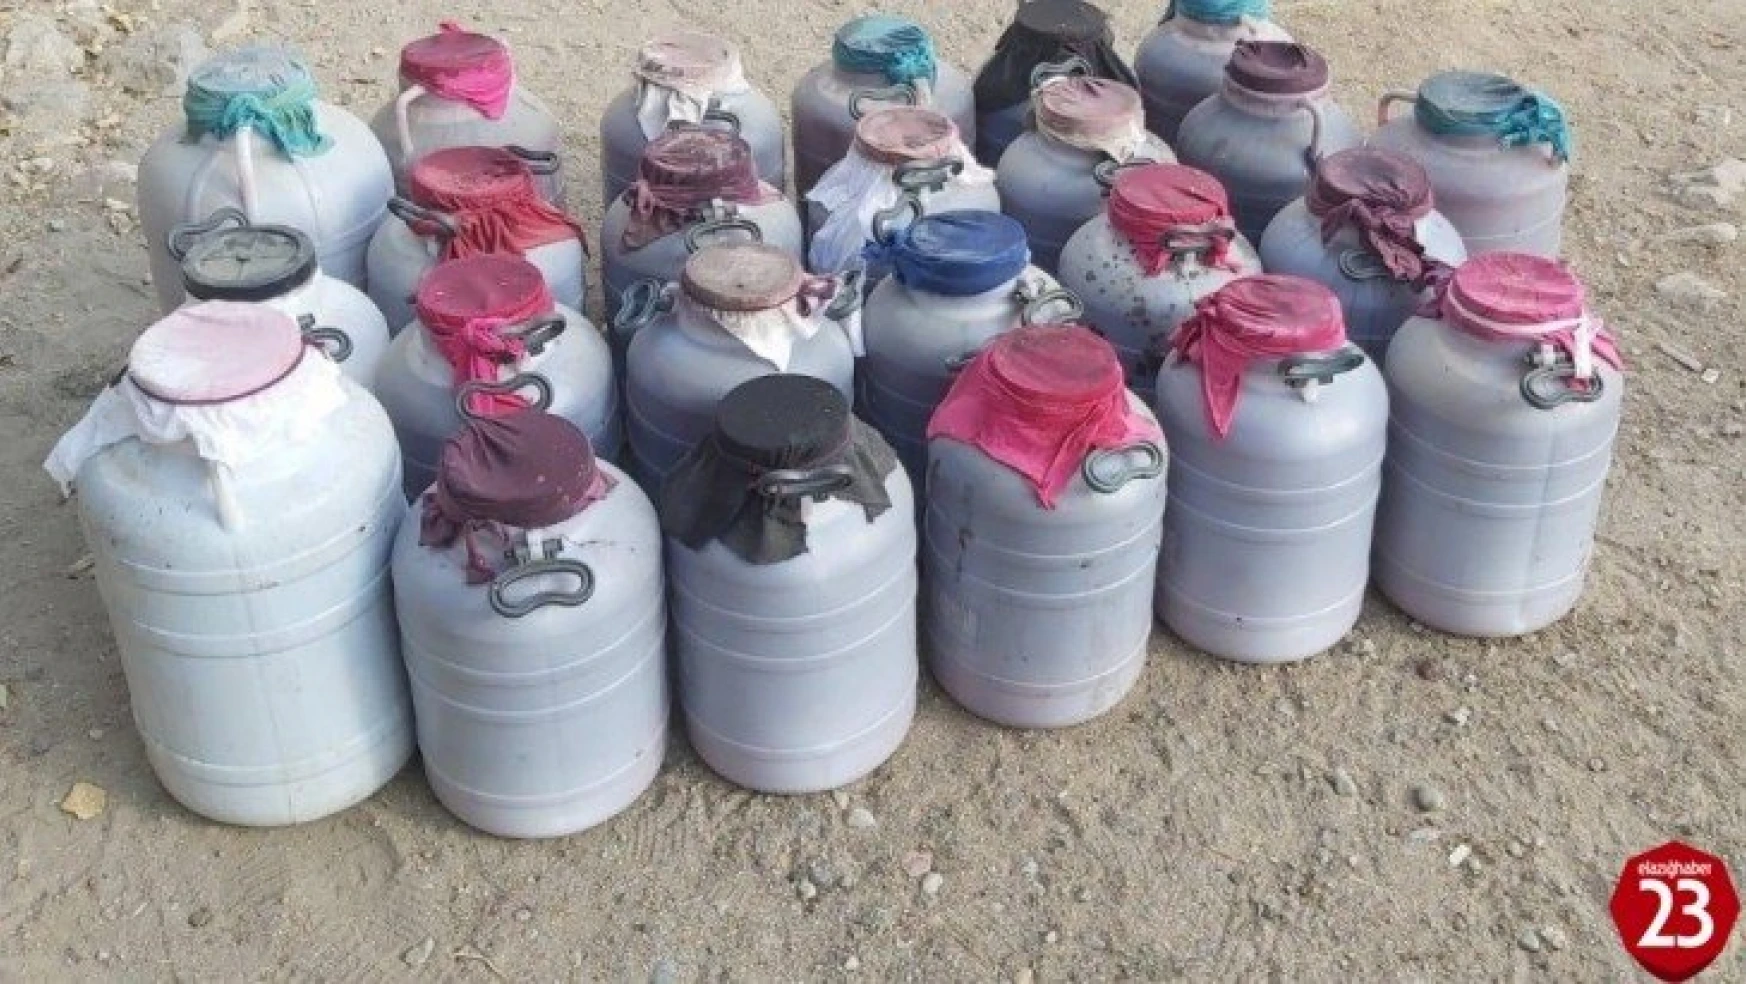 Elazığ'da 1 tondan fazla kaçak içki ele geçirildi